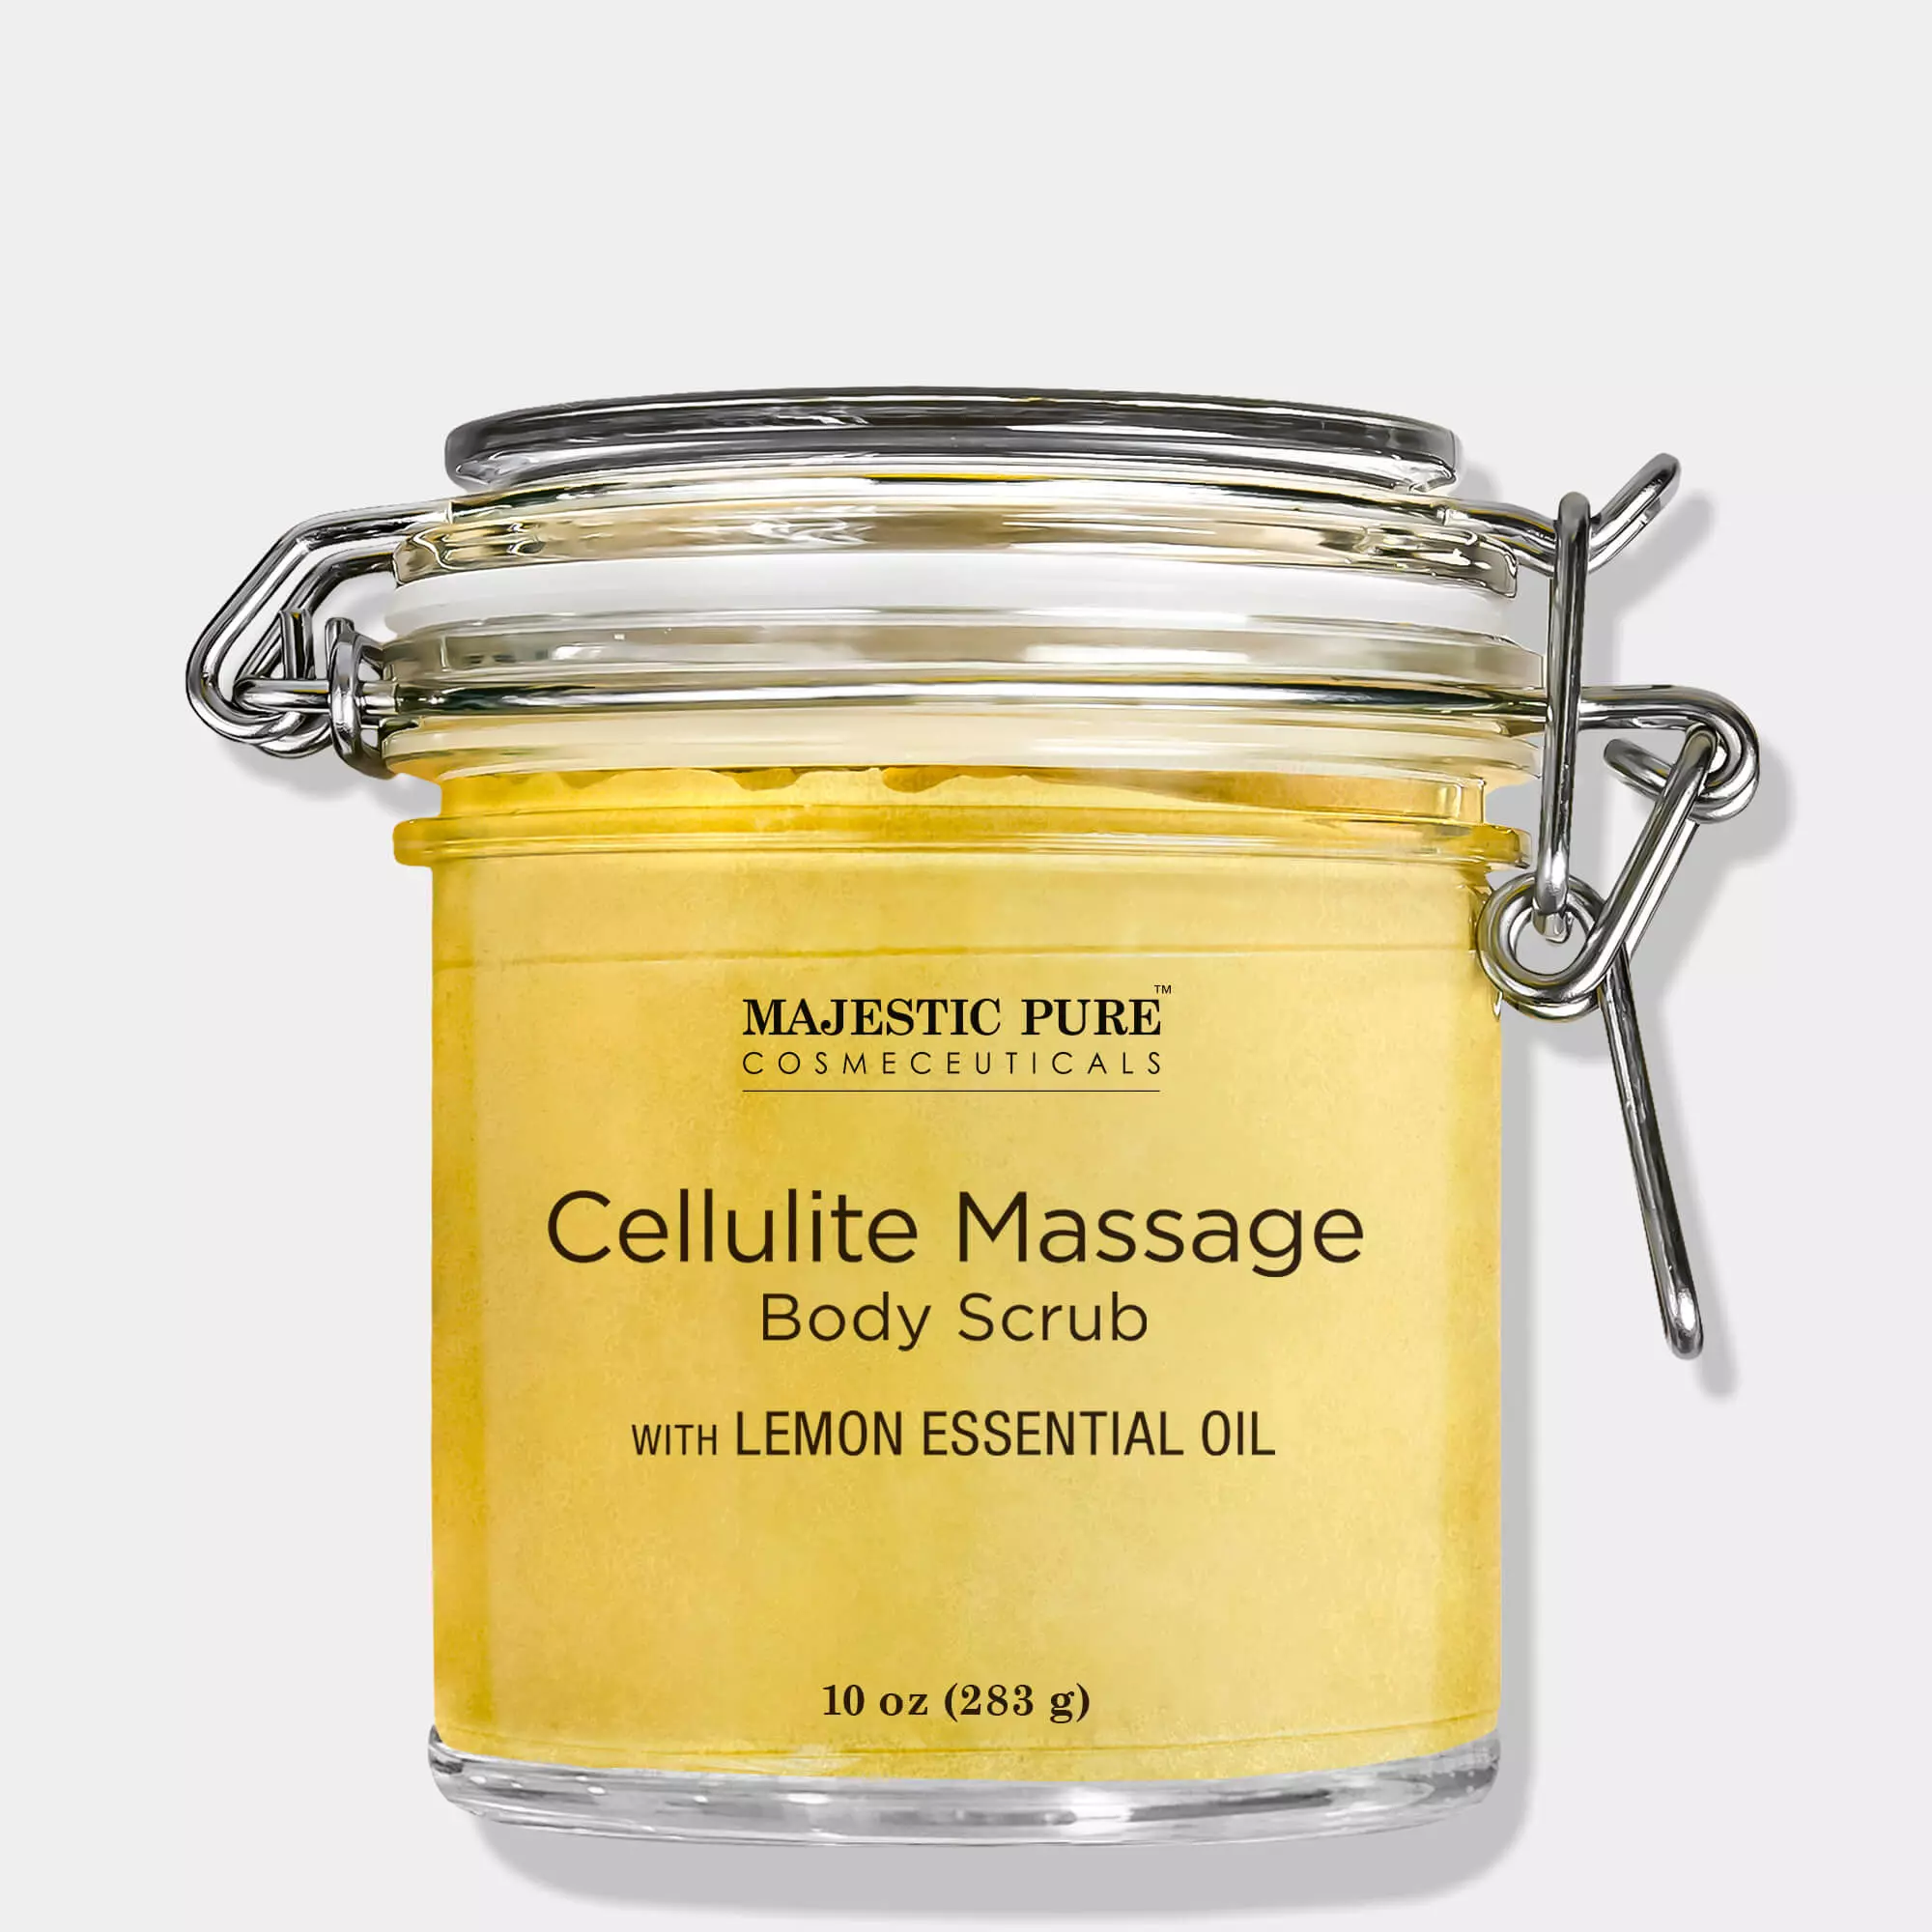 Majestic Pure Cellulite Massage Body Scrub